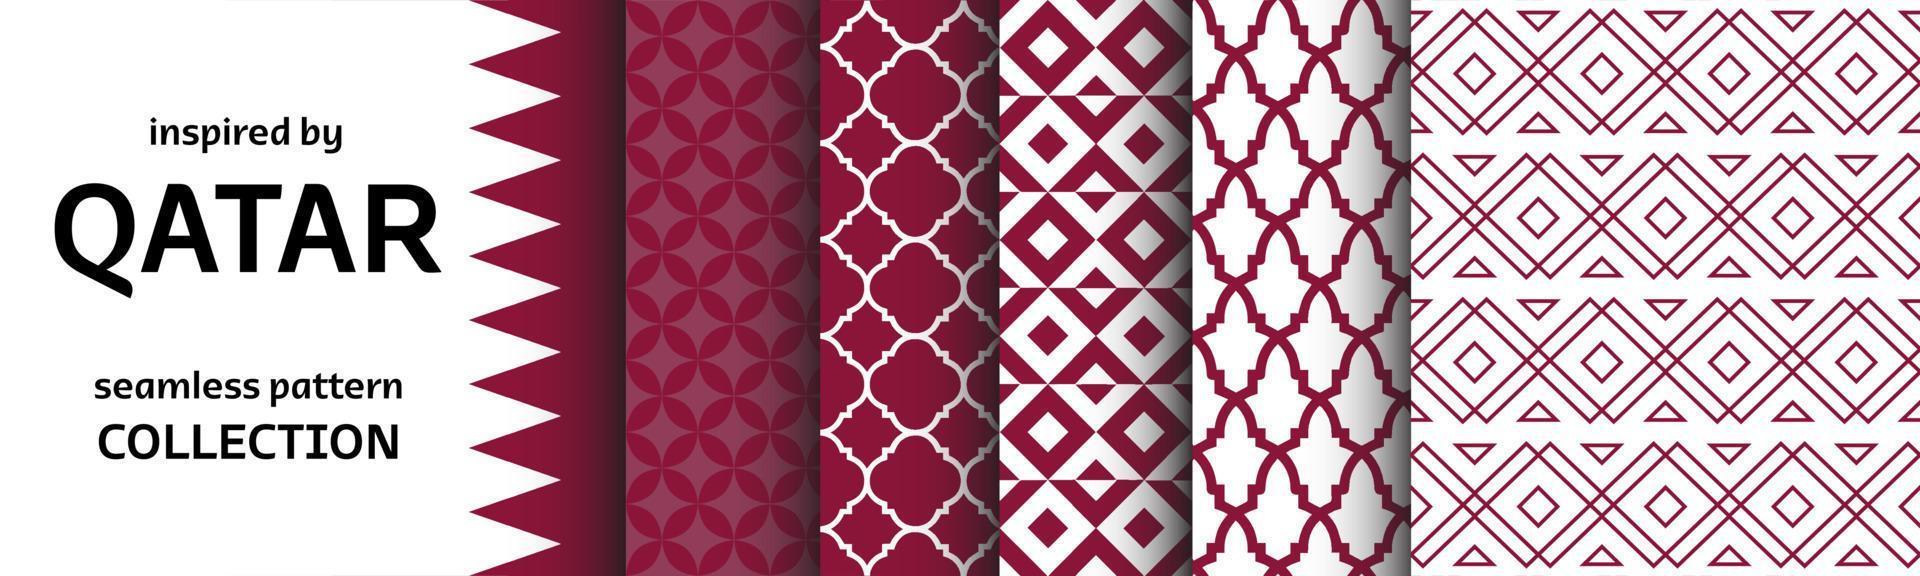 coleção de padrões sem costura inspirada na cultura e arte do qatar. conjunto de gráficos vetoriais com planos de fundo e texturas. vetor